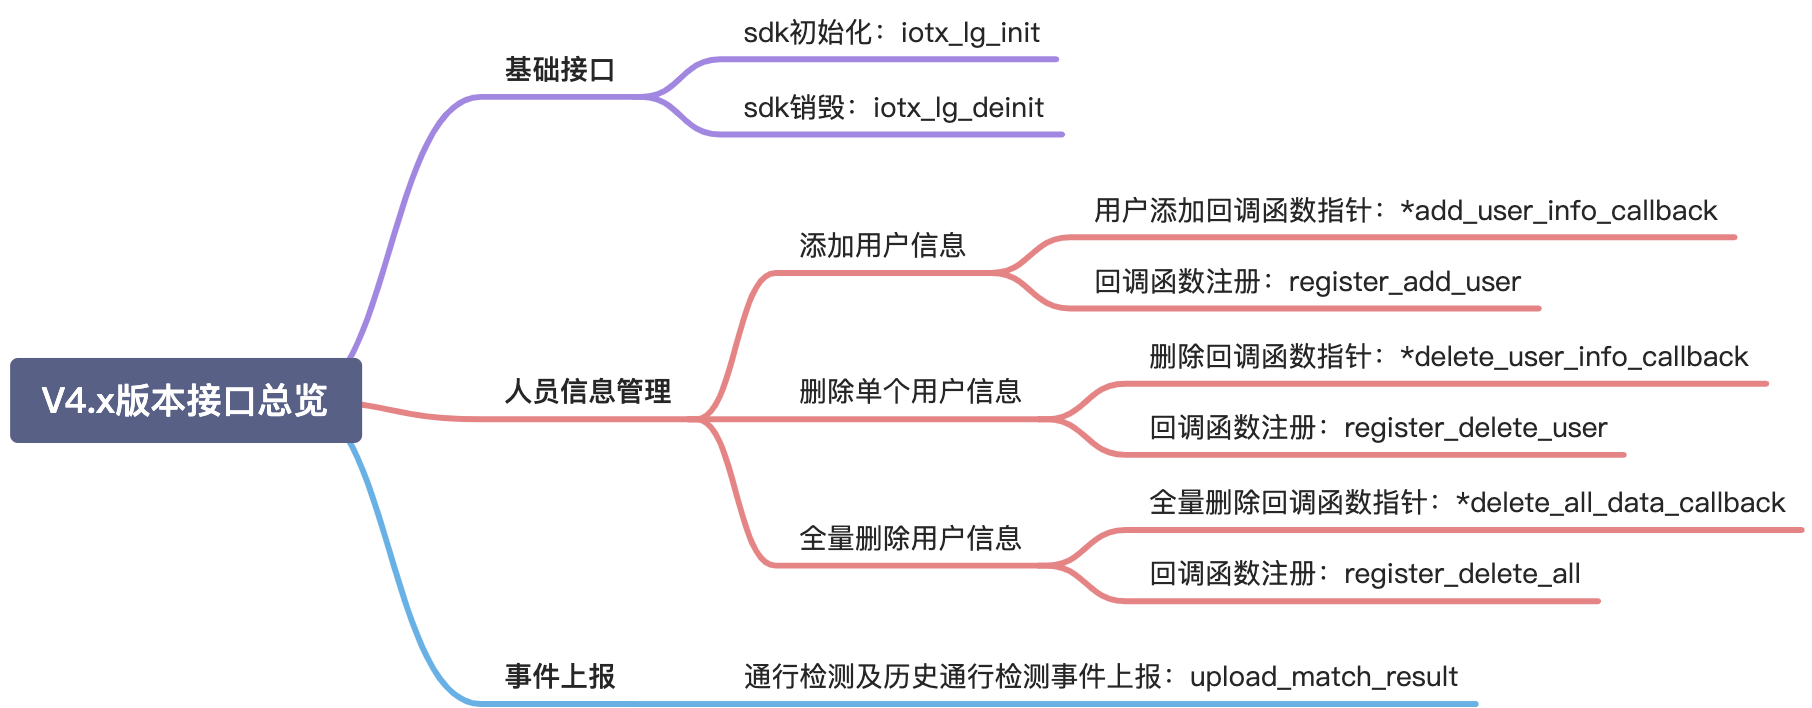 yuque_diagram (1)